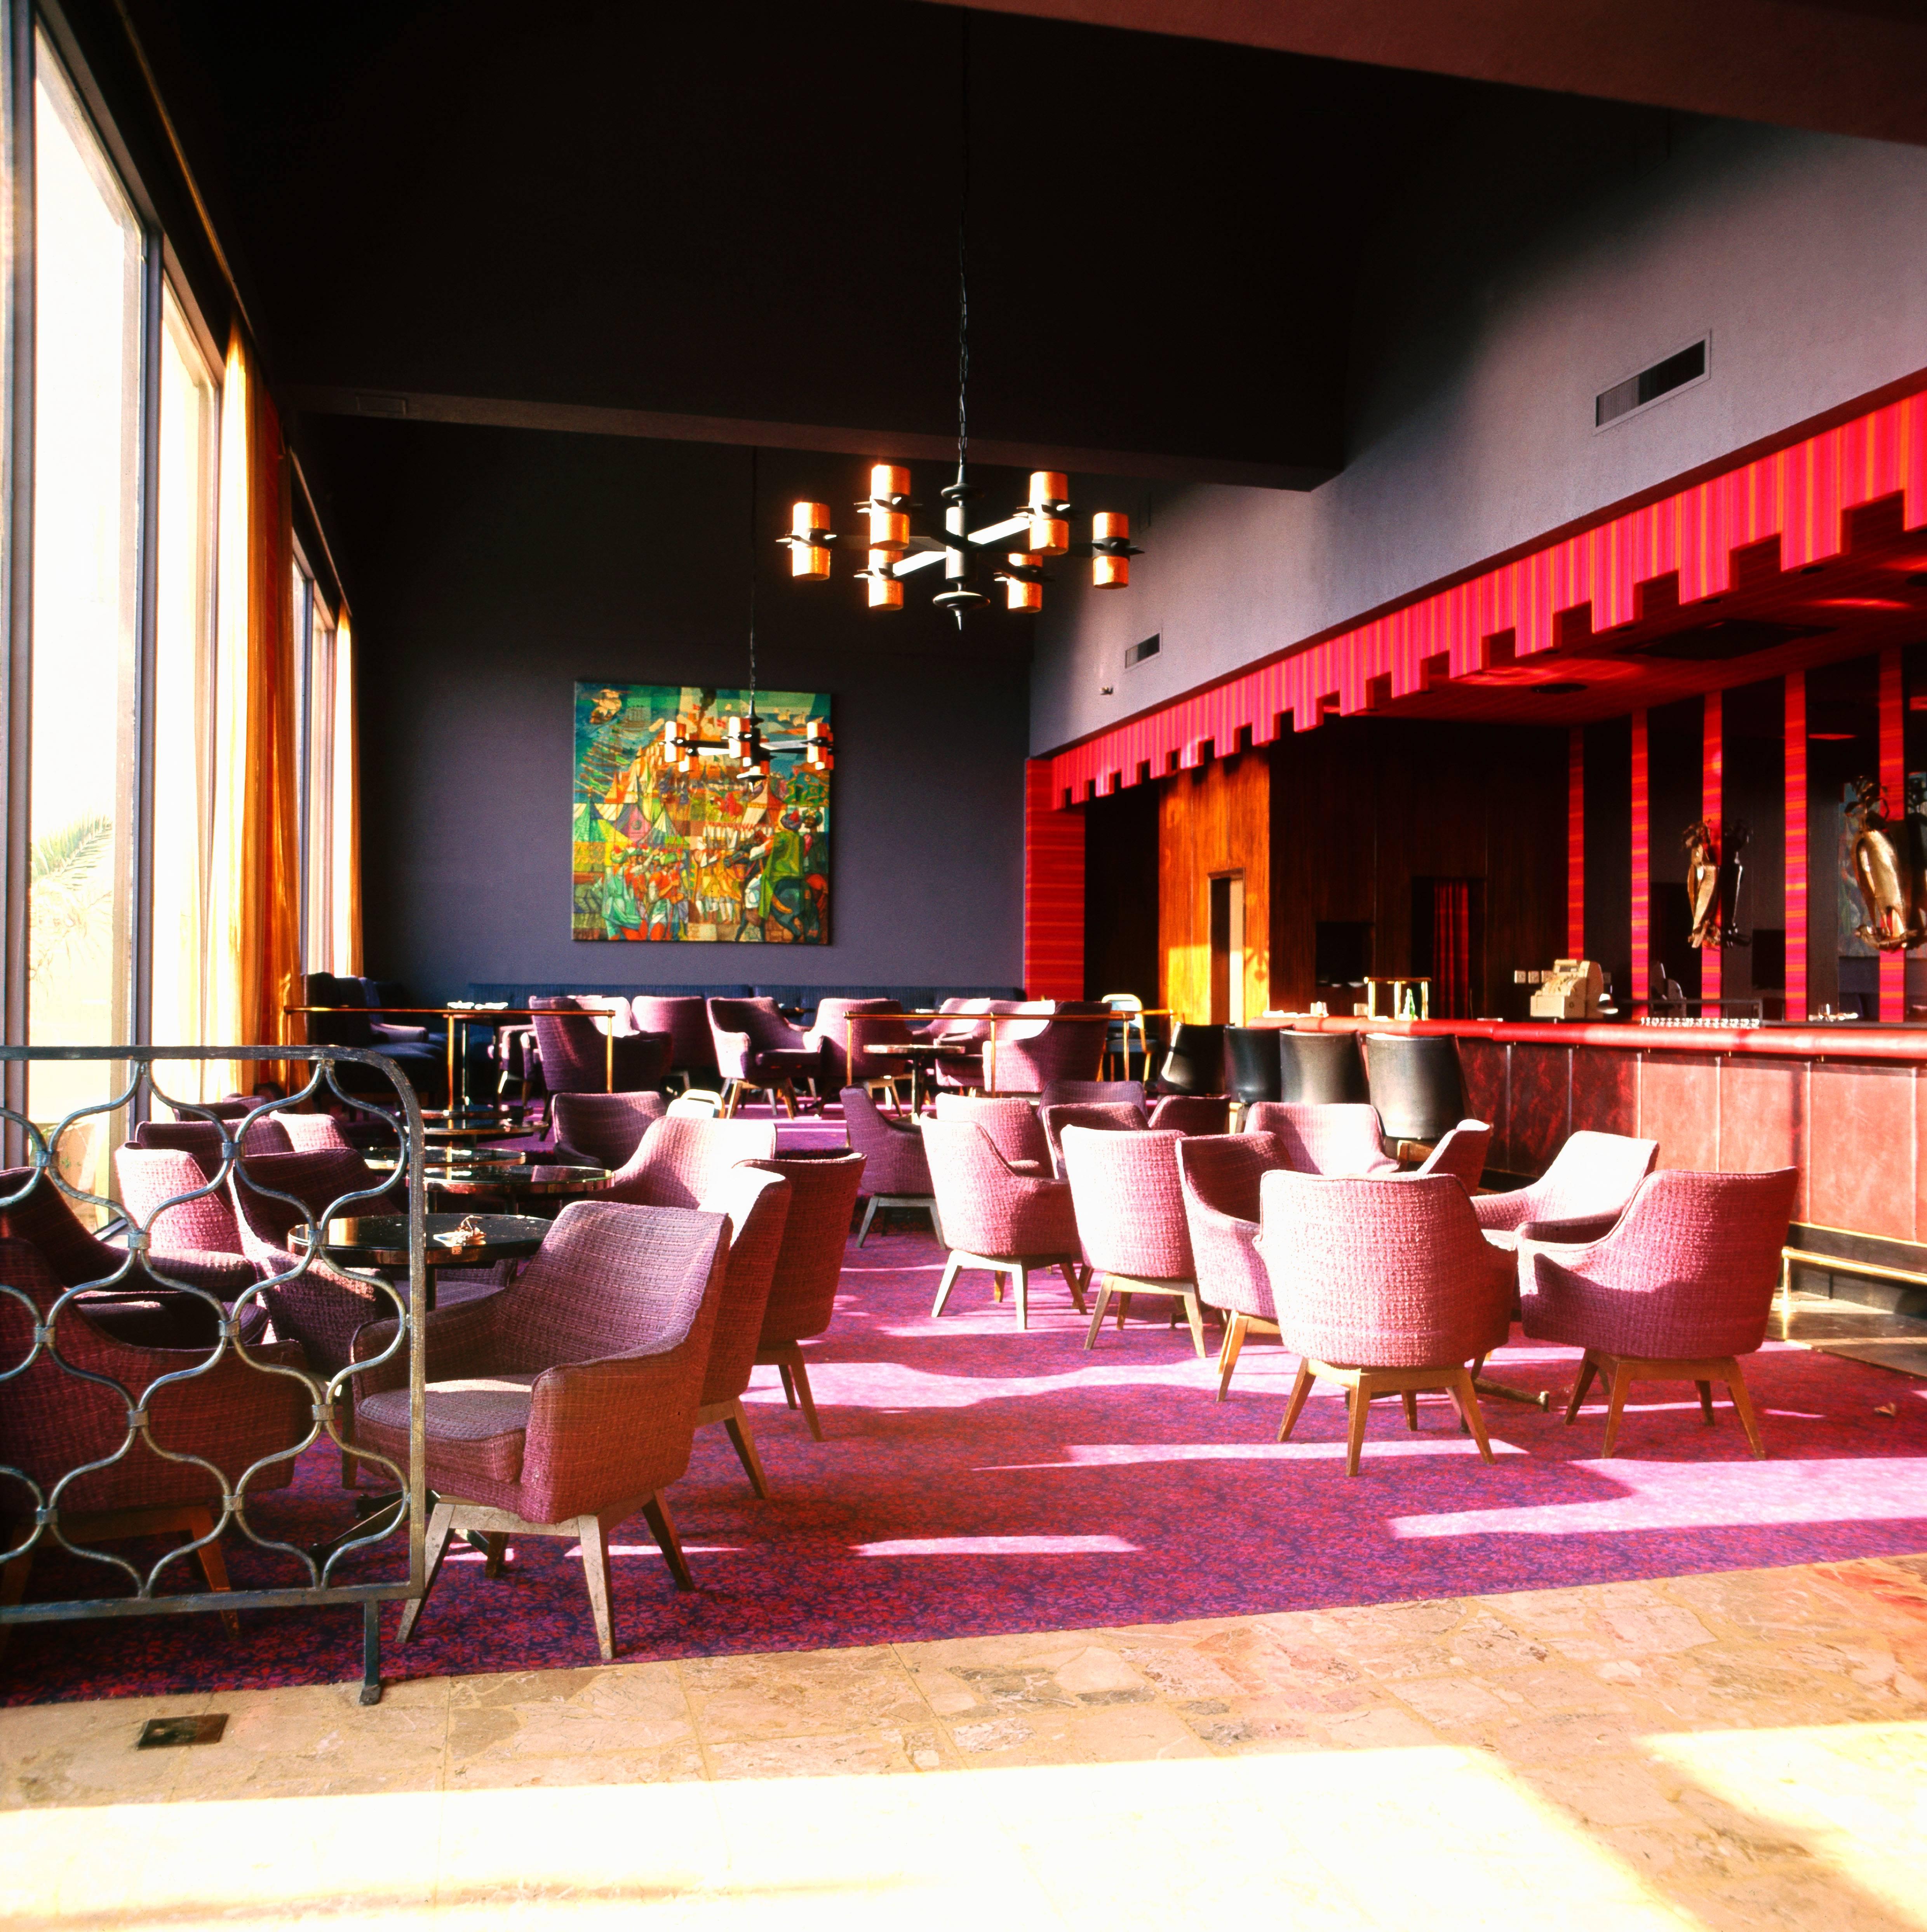 Color Photograph Walter Rudolph - Lobbies, chambres et bars de l'hôtel Hilton à Valetta, Malte